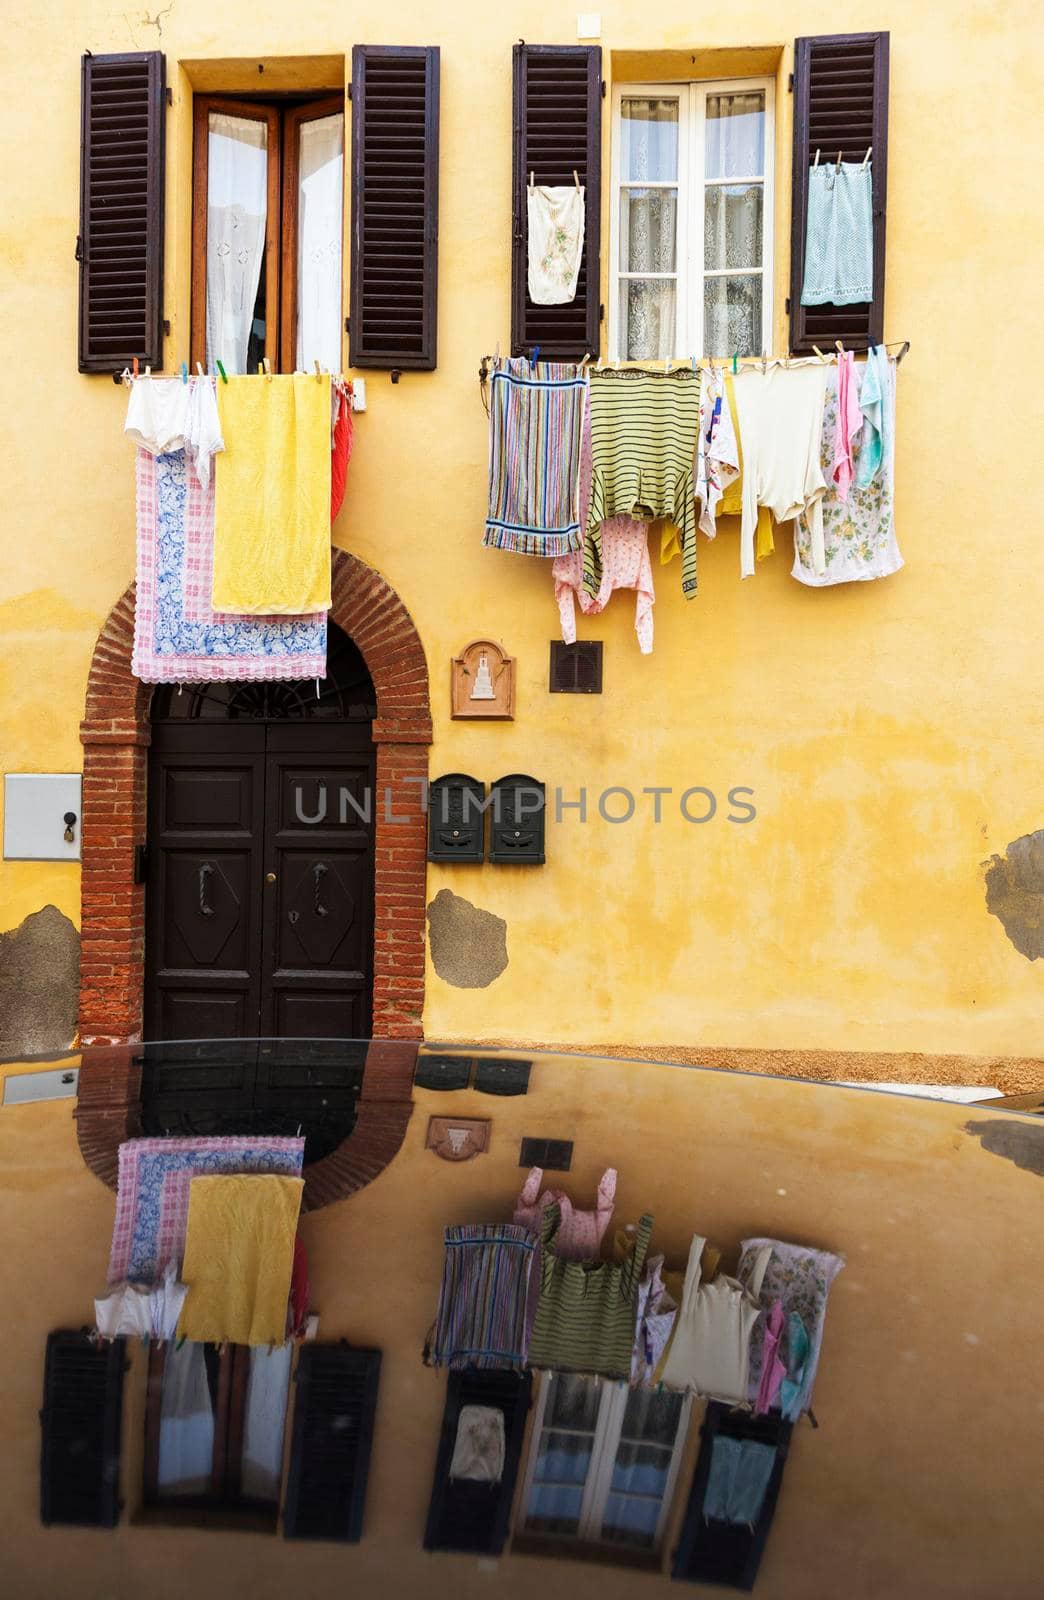 Hanging loundry - seen in Tuscany. Tuscany, Italy.